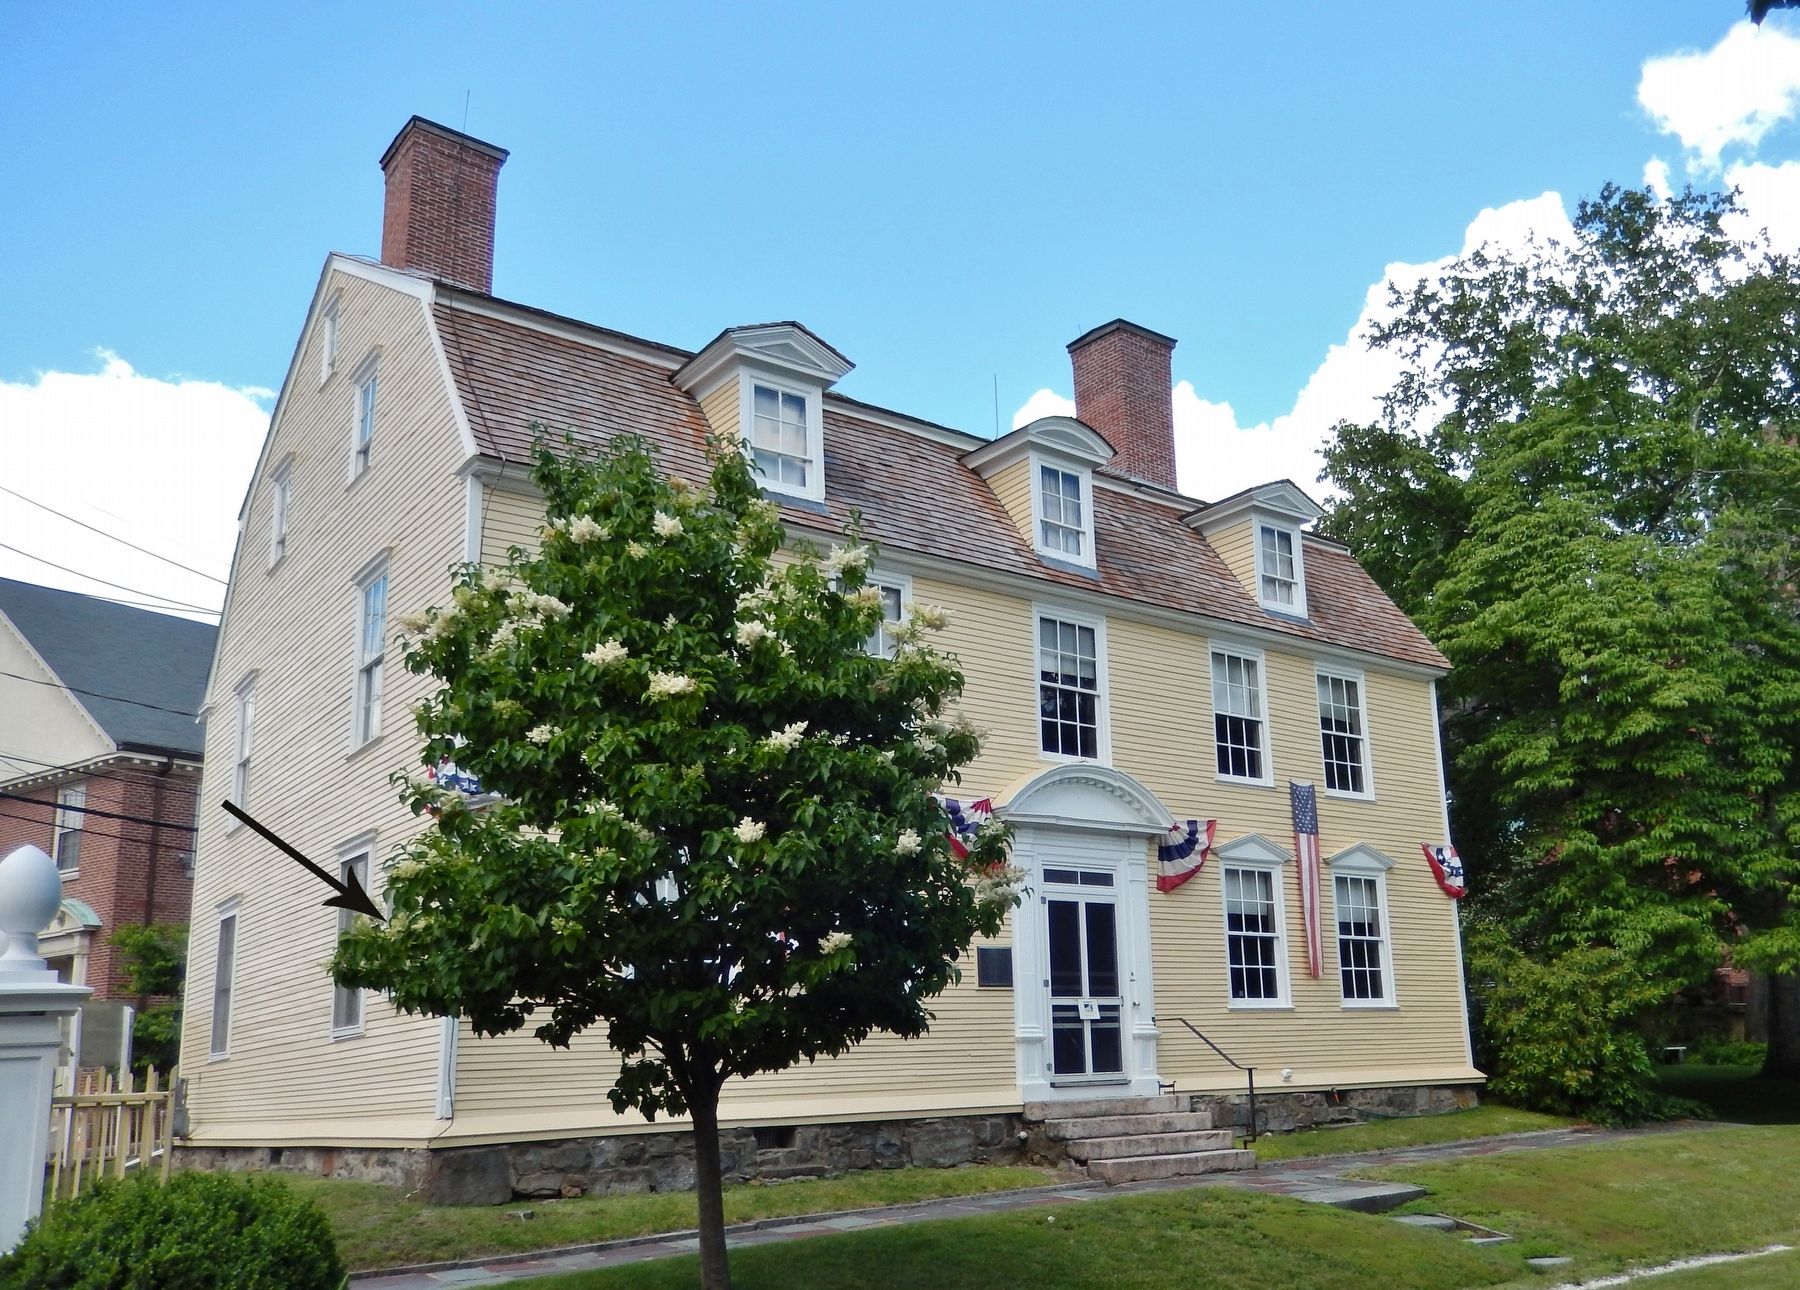 John Paul Jones House (<i>southeast corner view; marker hidden by tree leaves</i>) image. Click for full size.